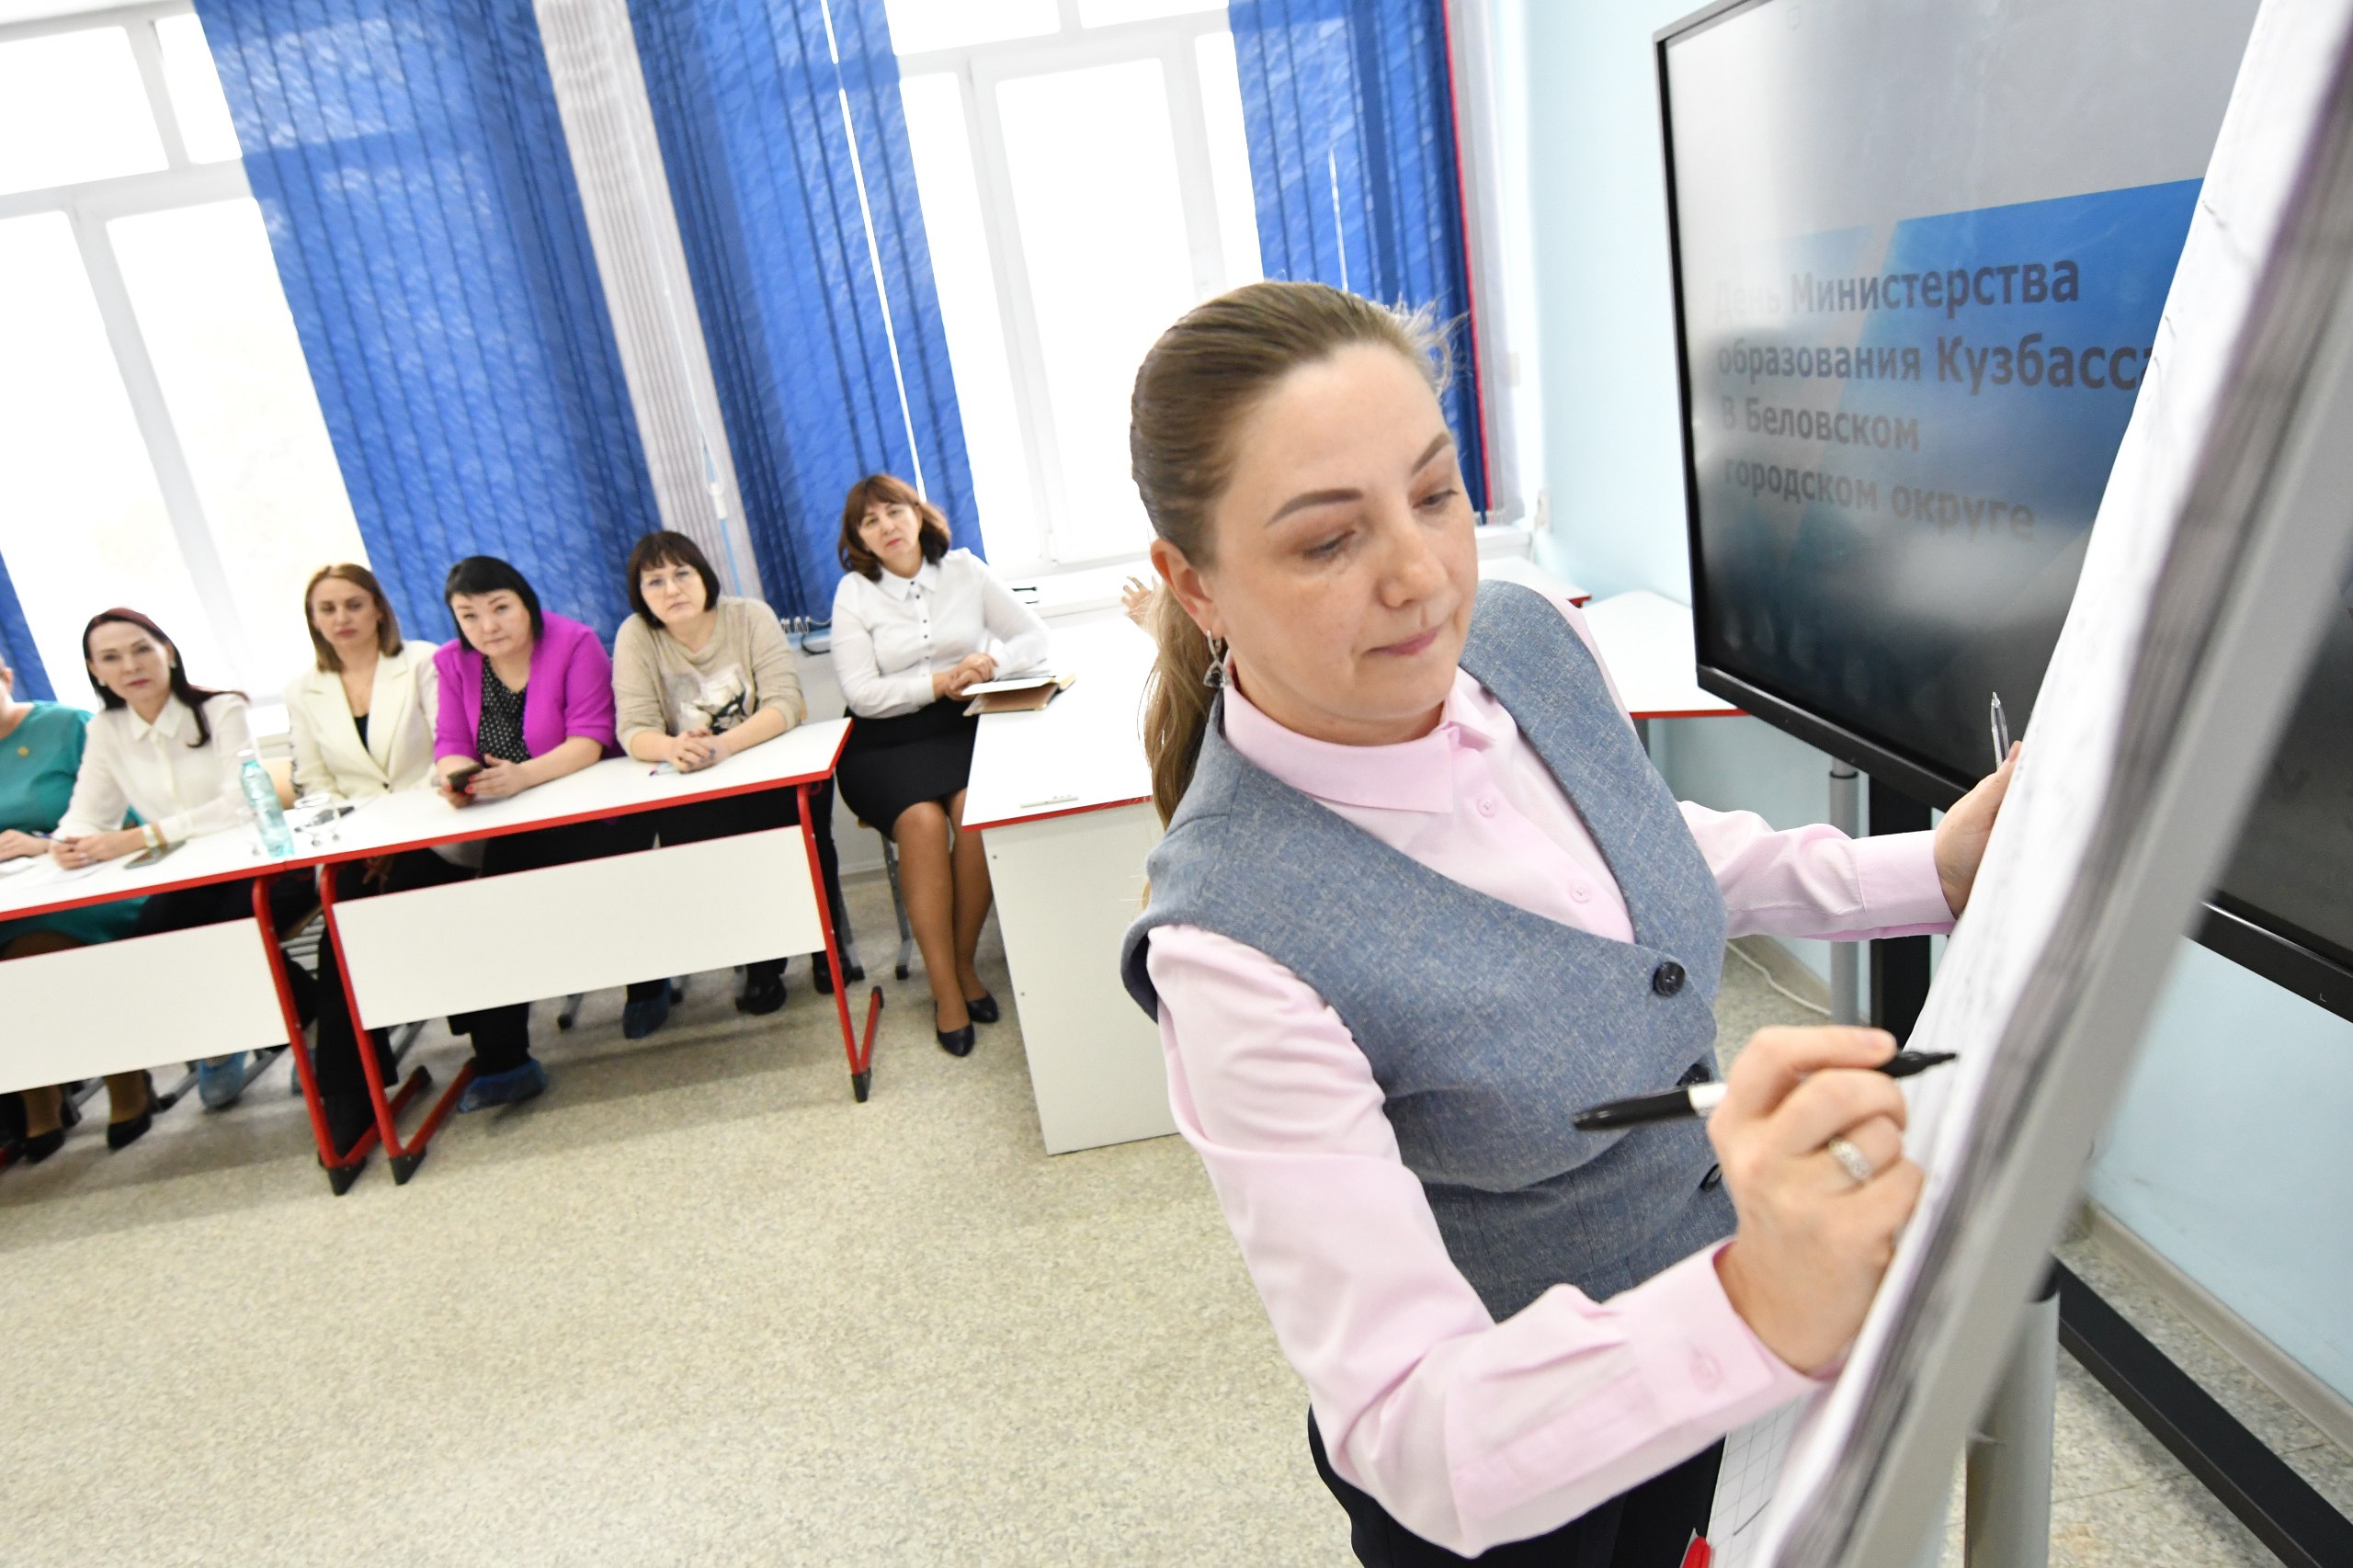 Дни Министерства образования Кузбасса проходят в Белове 